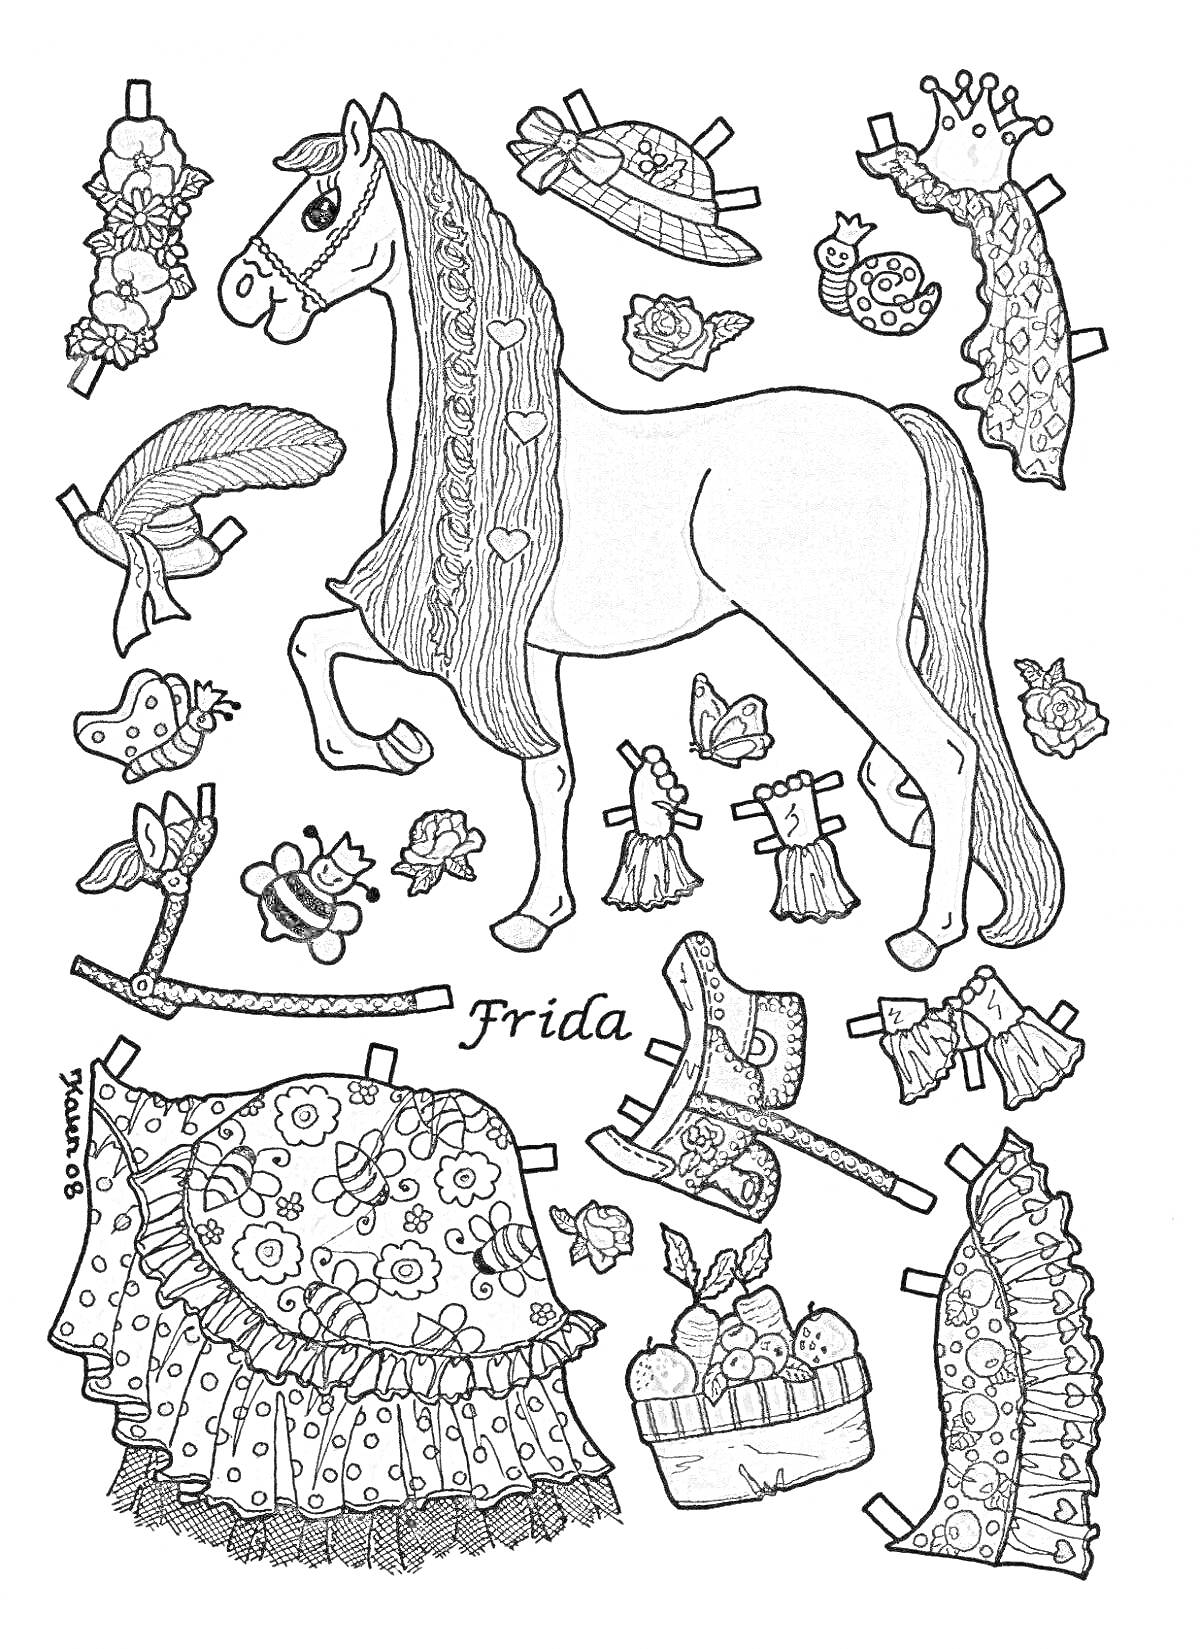 Раскраска Лошадь с одеждой и аксессуарами: шляпы, корона, перо, платок, обувь, браслеты, сбруи, юбки, корзина с цветами